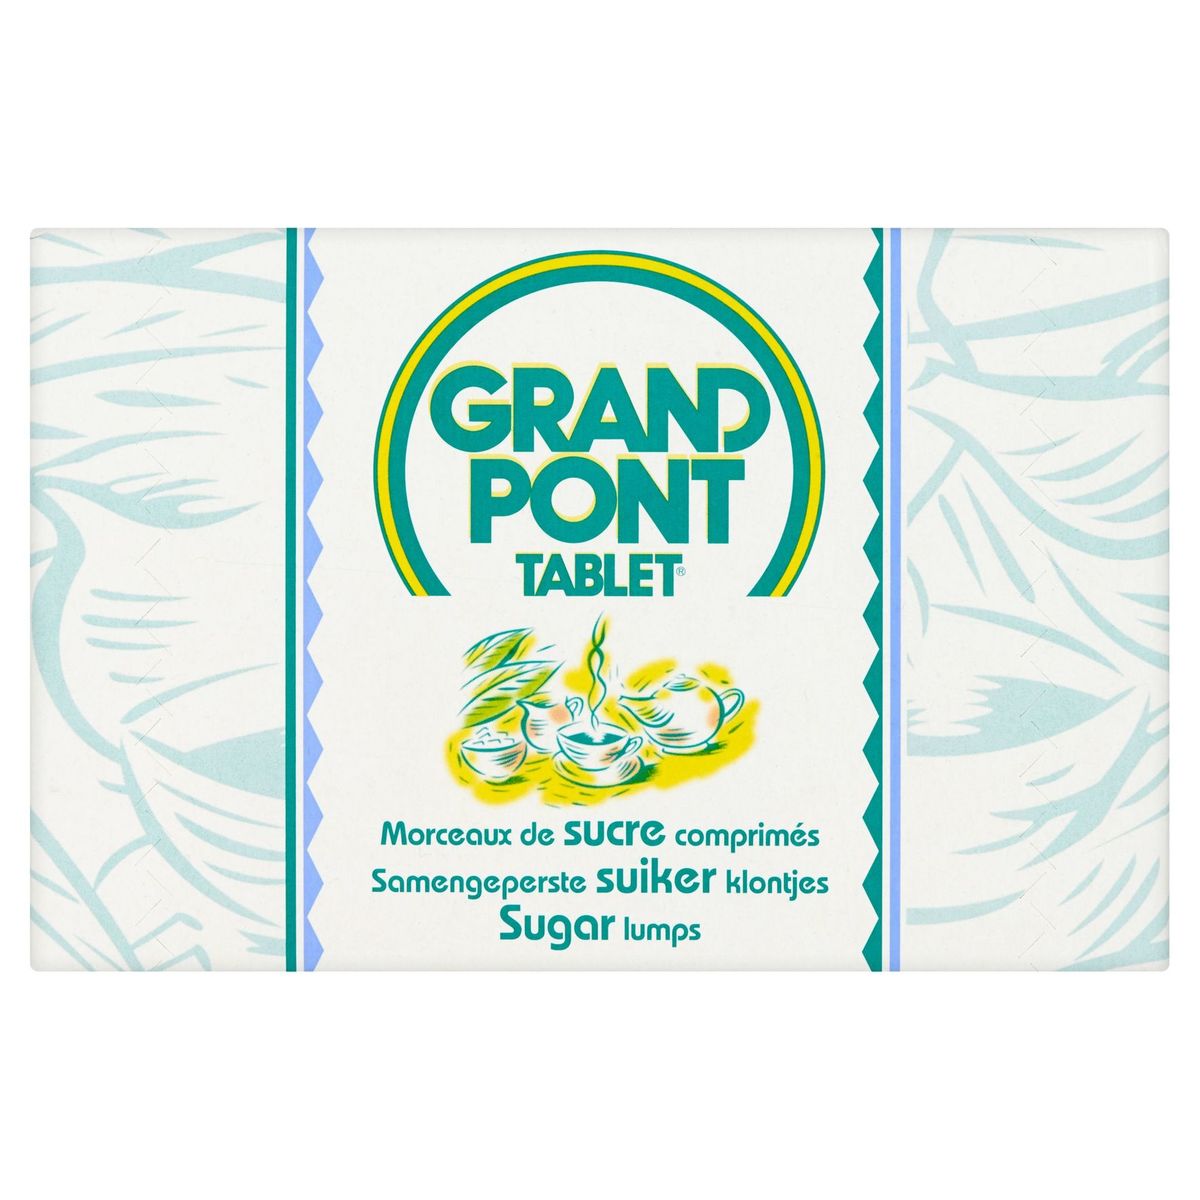 Tablet Grand Pont Morceaux de Sucre Comprimés 1 kg